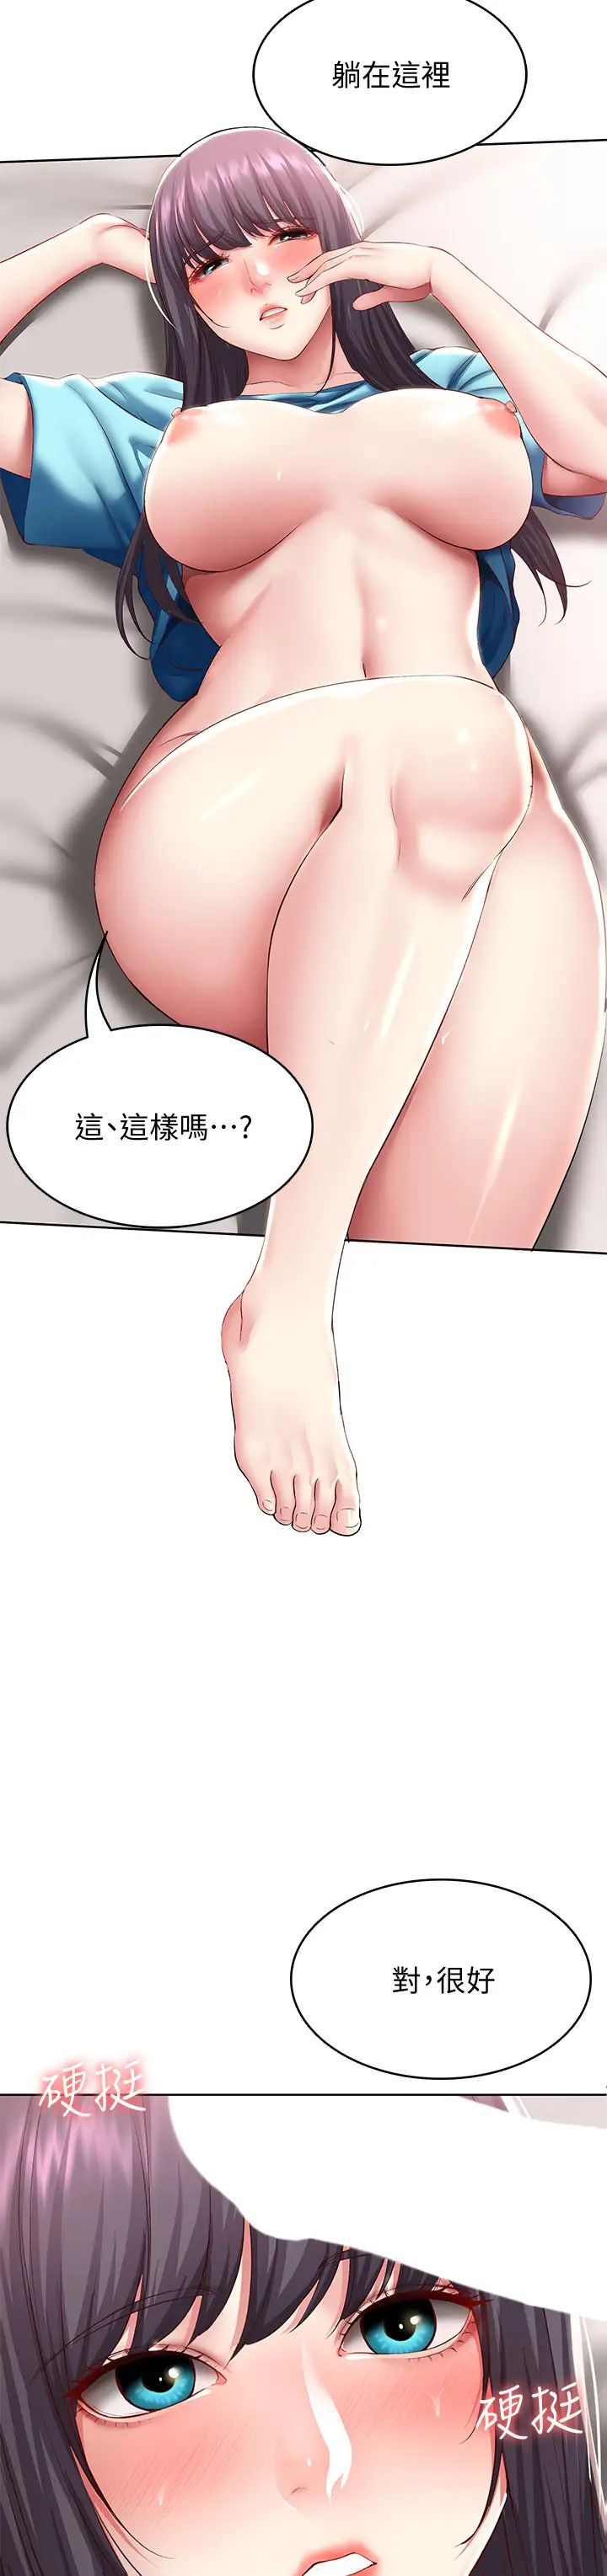 韩国污漫画 寄宿日記 第83话用深喉咙帮俊宇充电 31